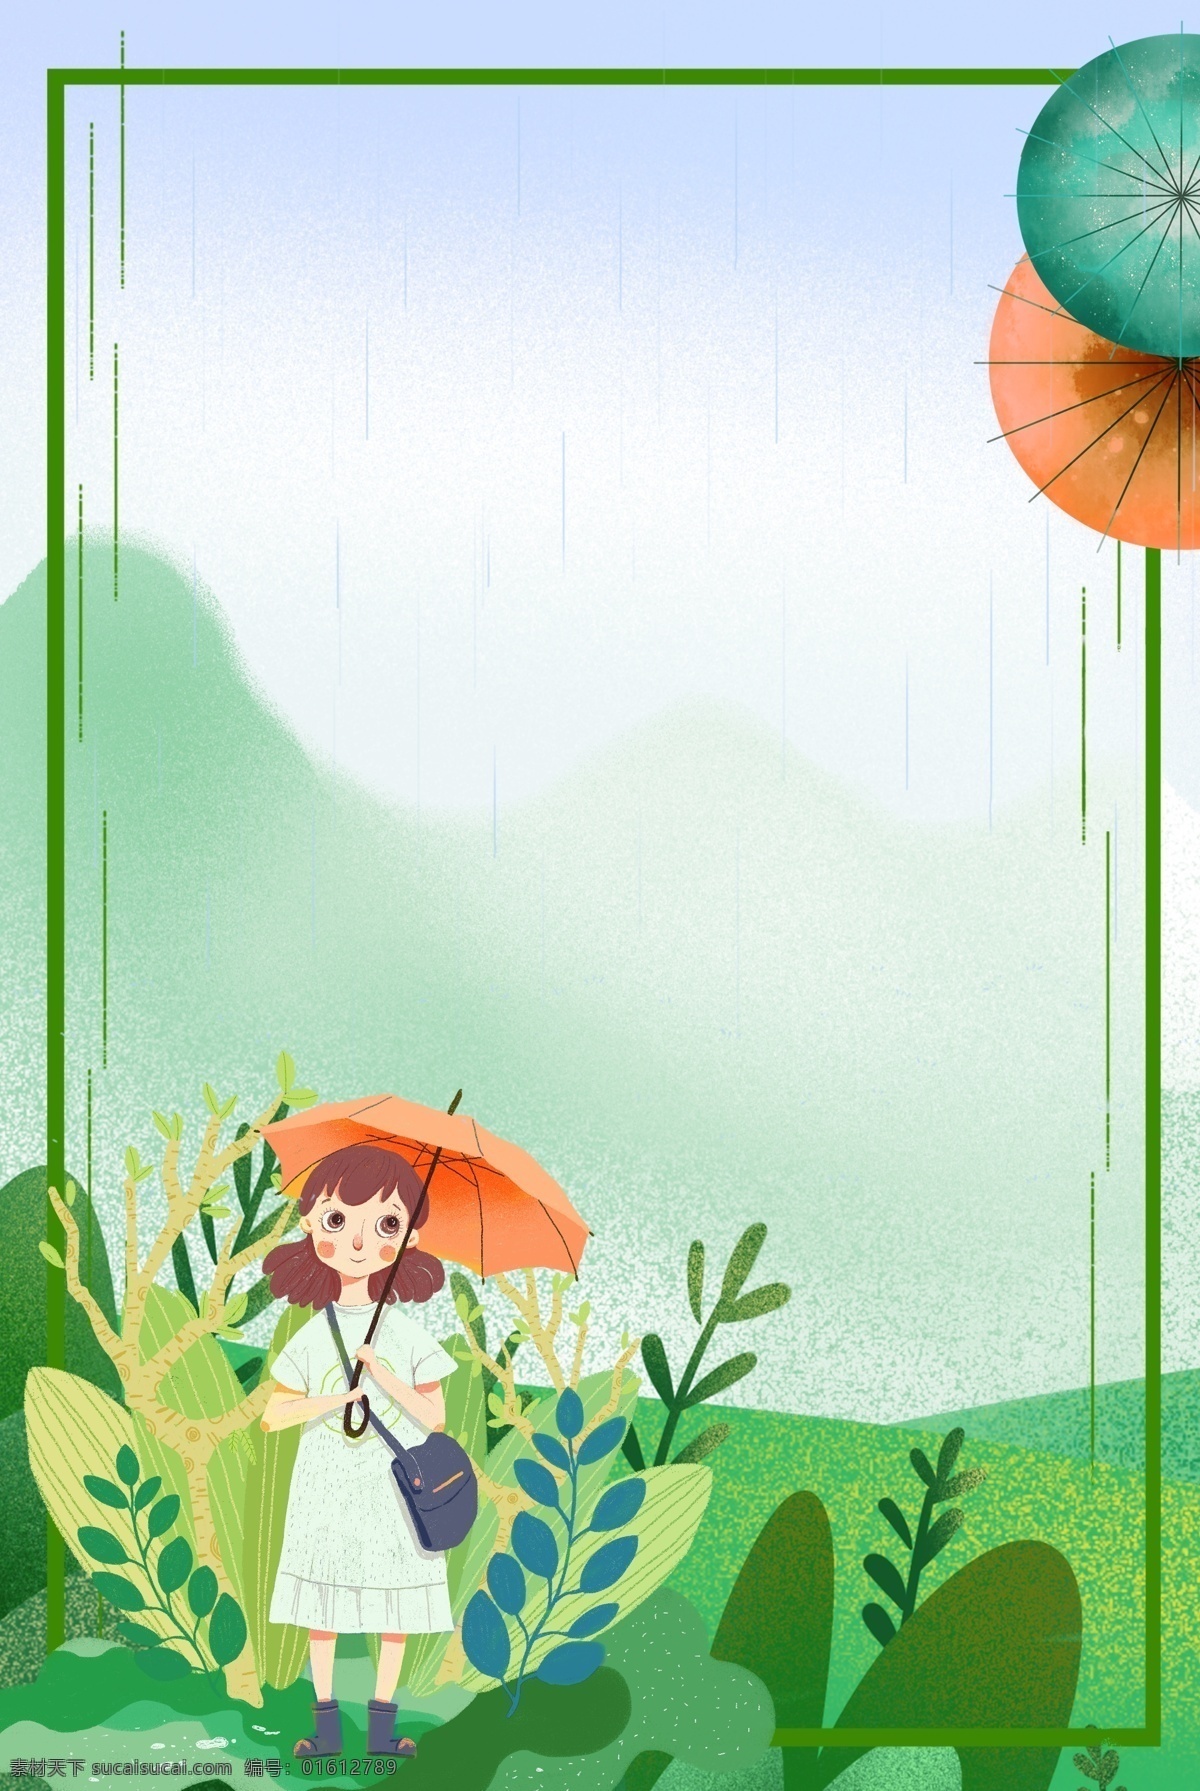 山清水秀 夏日 谷雨 节气 撑伞 这样 下雨 雨天 夏季 夏天 绿色 噪点